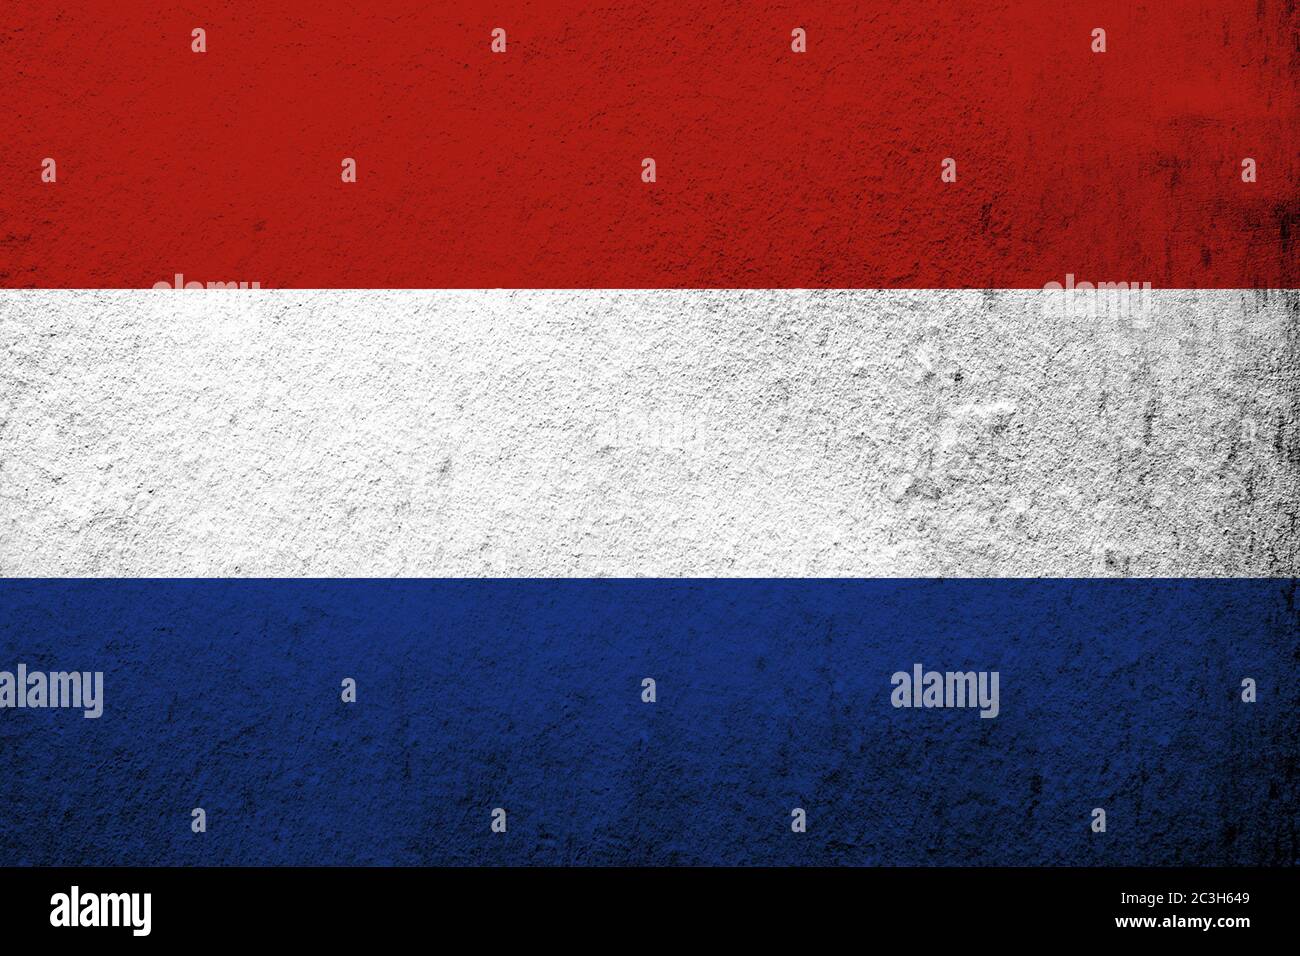 Le drapeau national du Royaume des Pays-Bas. Fond Grunge Banque D'Images